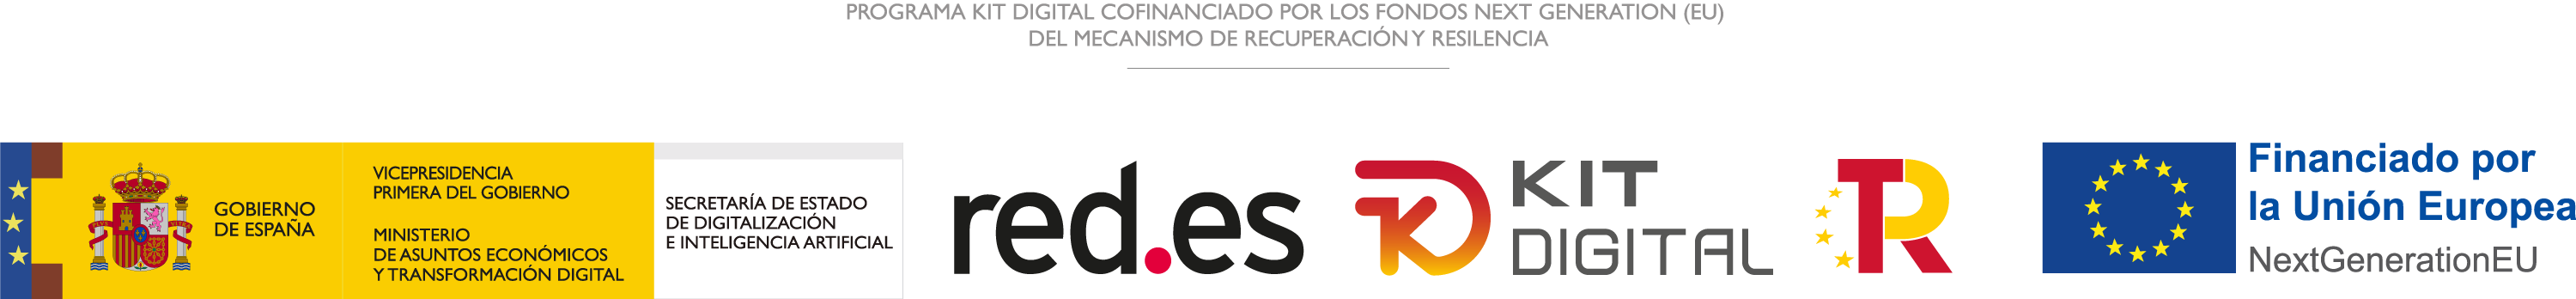 De izquierda a derecha: Logos de la Secretaría de Estado de Digitalización, Red.es, Kit Digital, TR y NextGenerationEU